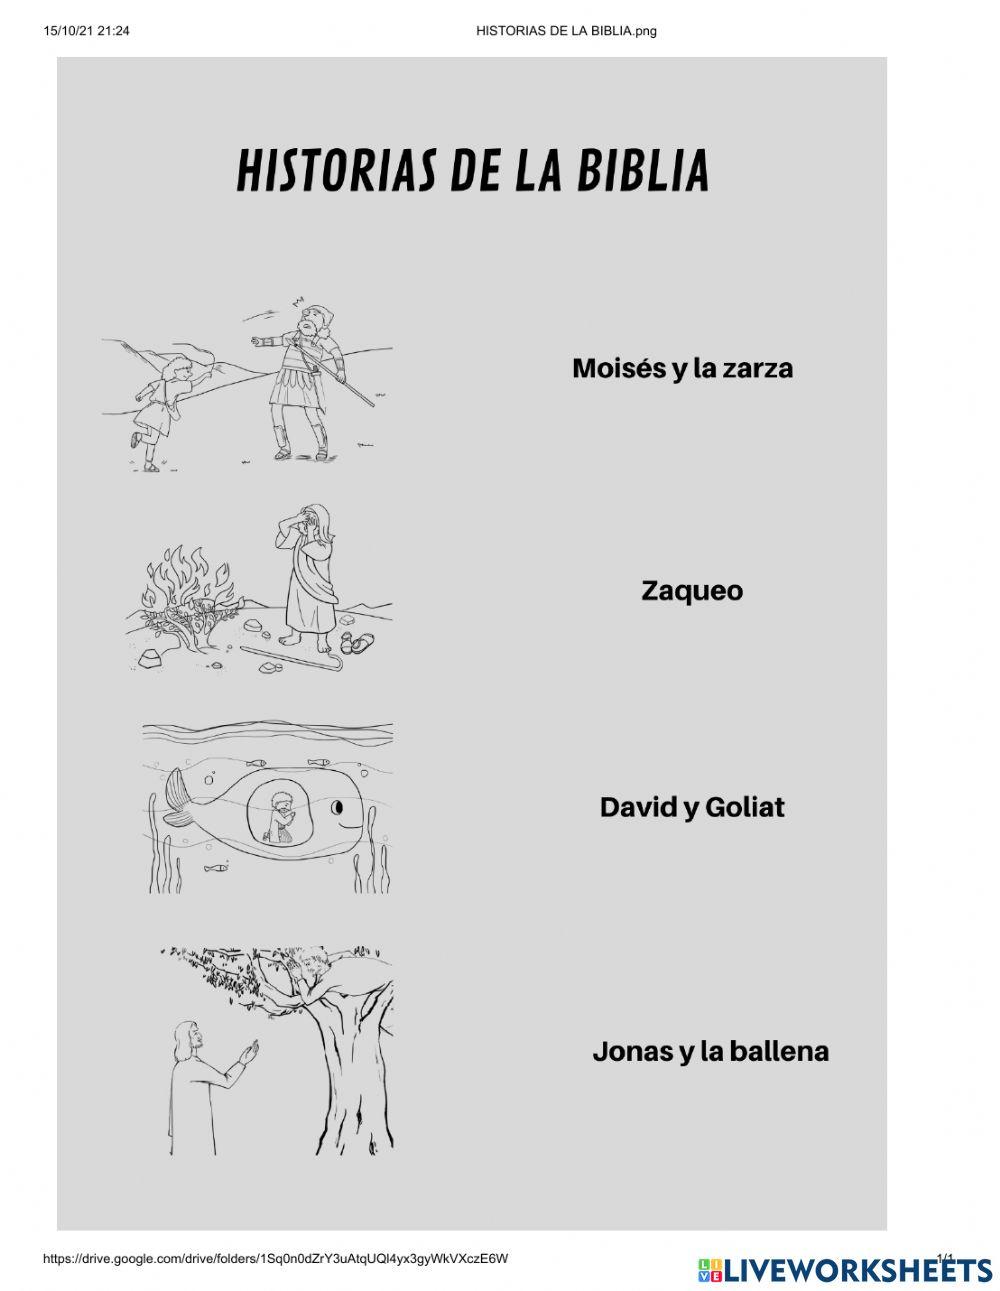 Historias de la biblia